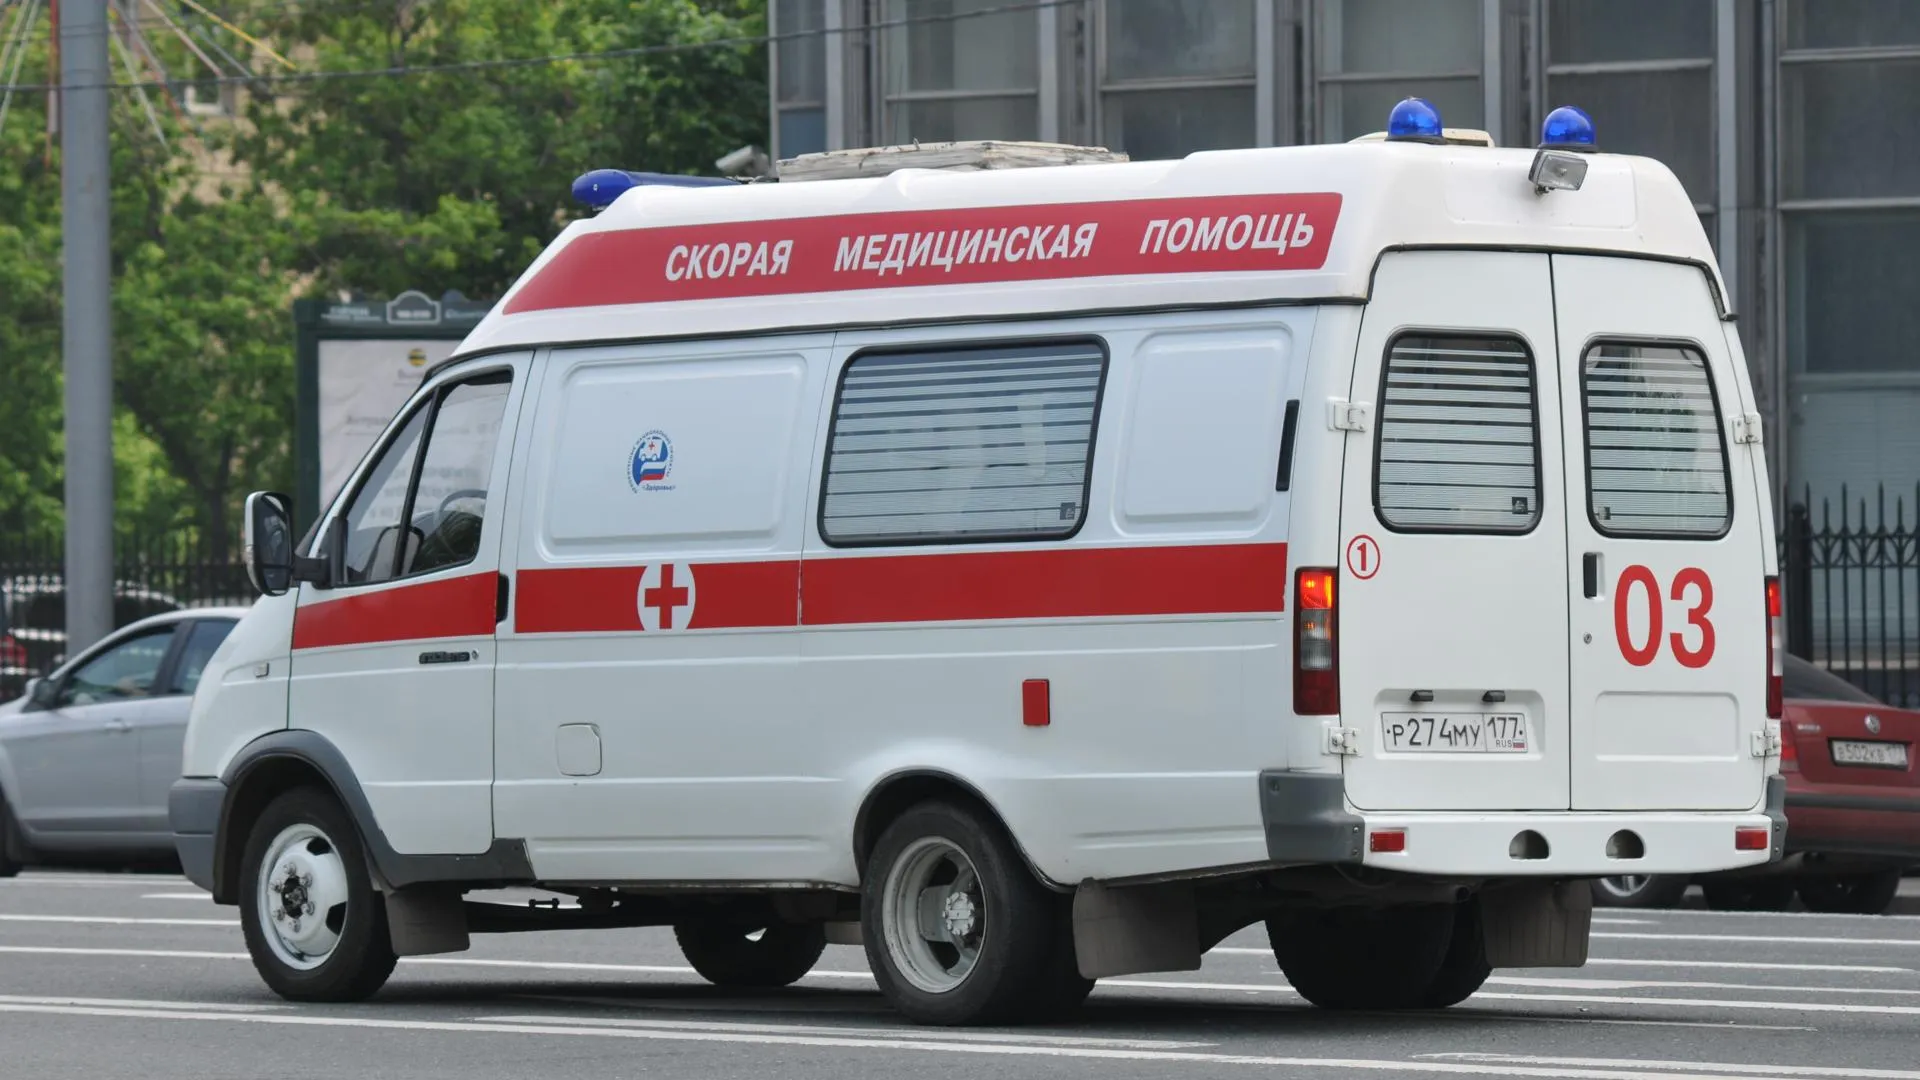 Двое из погибших в ДТП в Истринском районе являются полицейскими — МВД